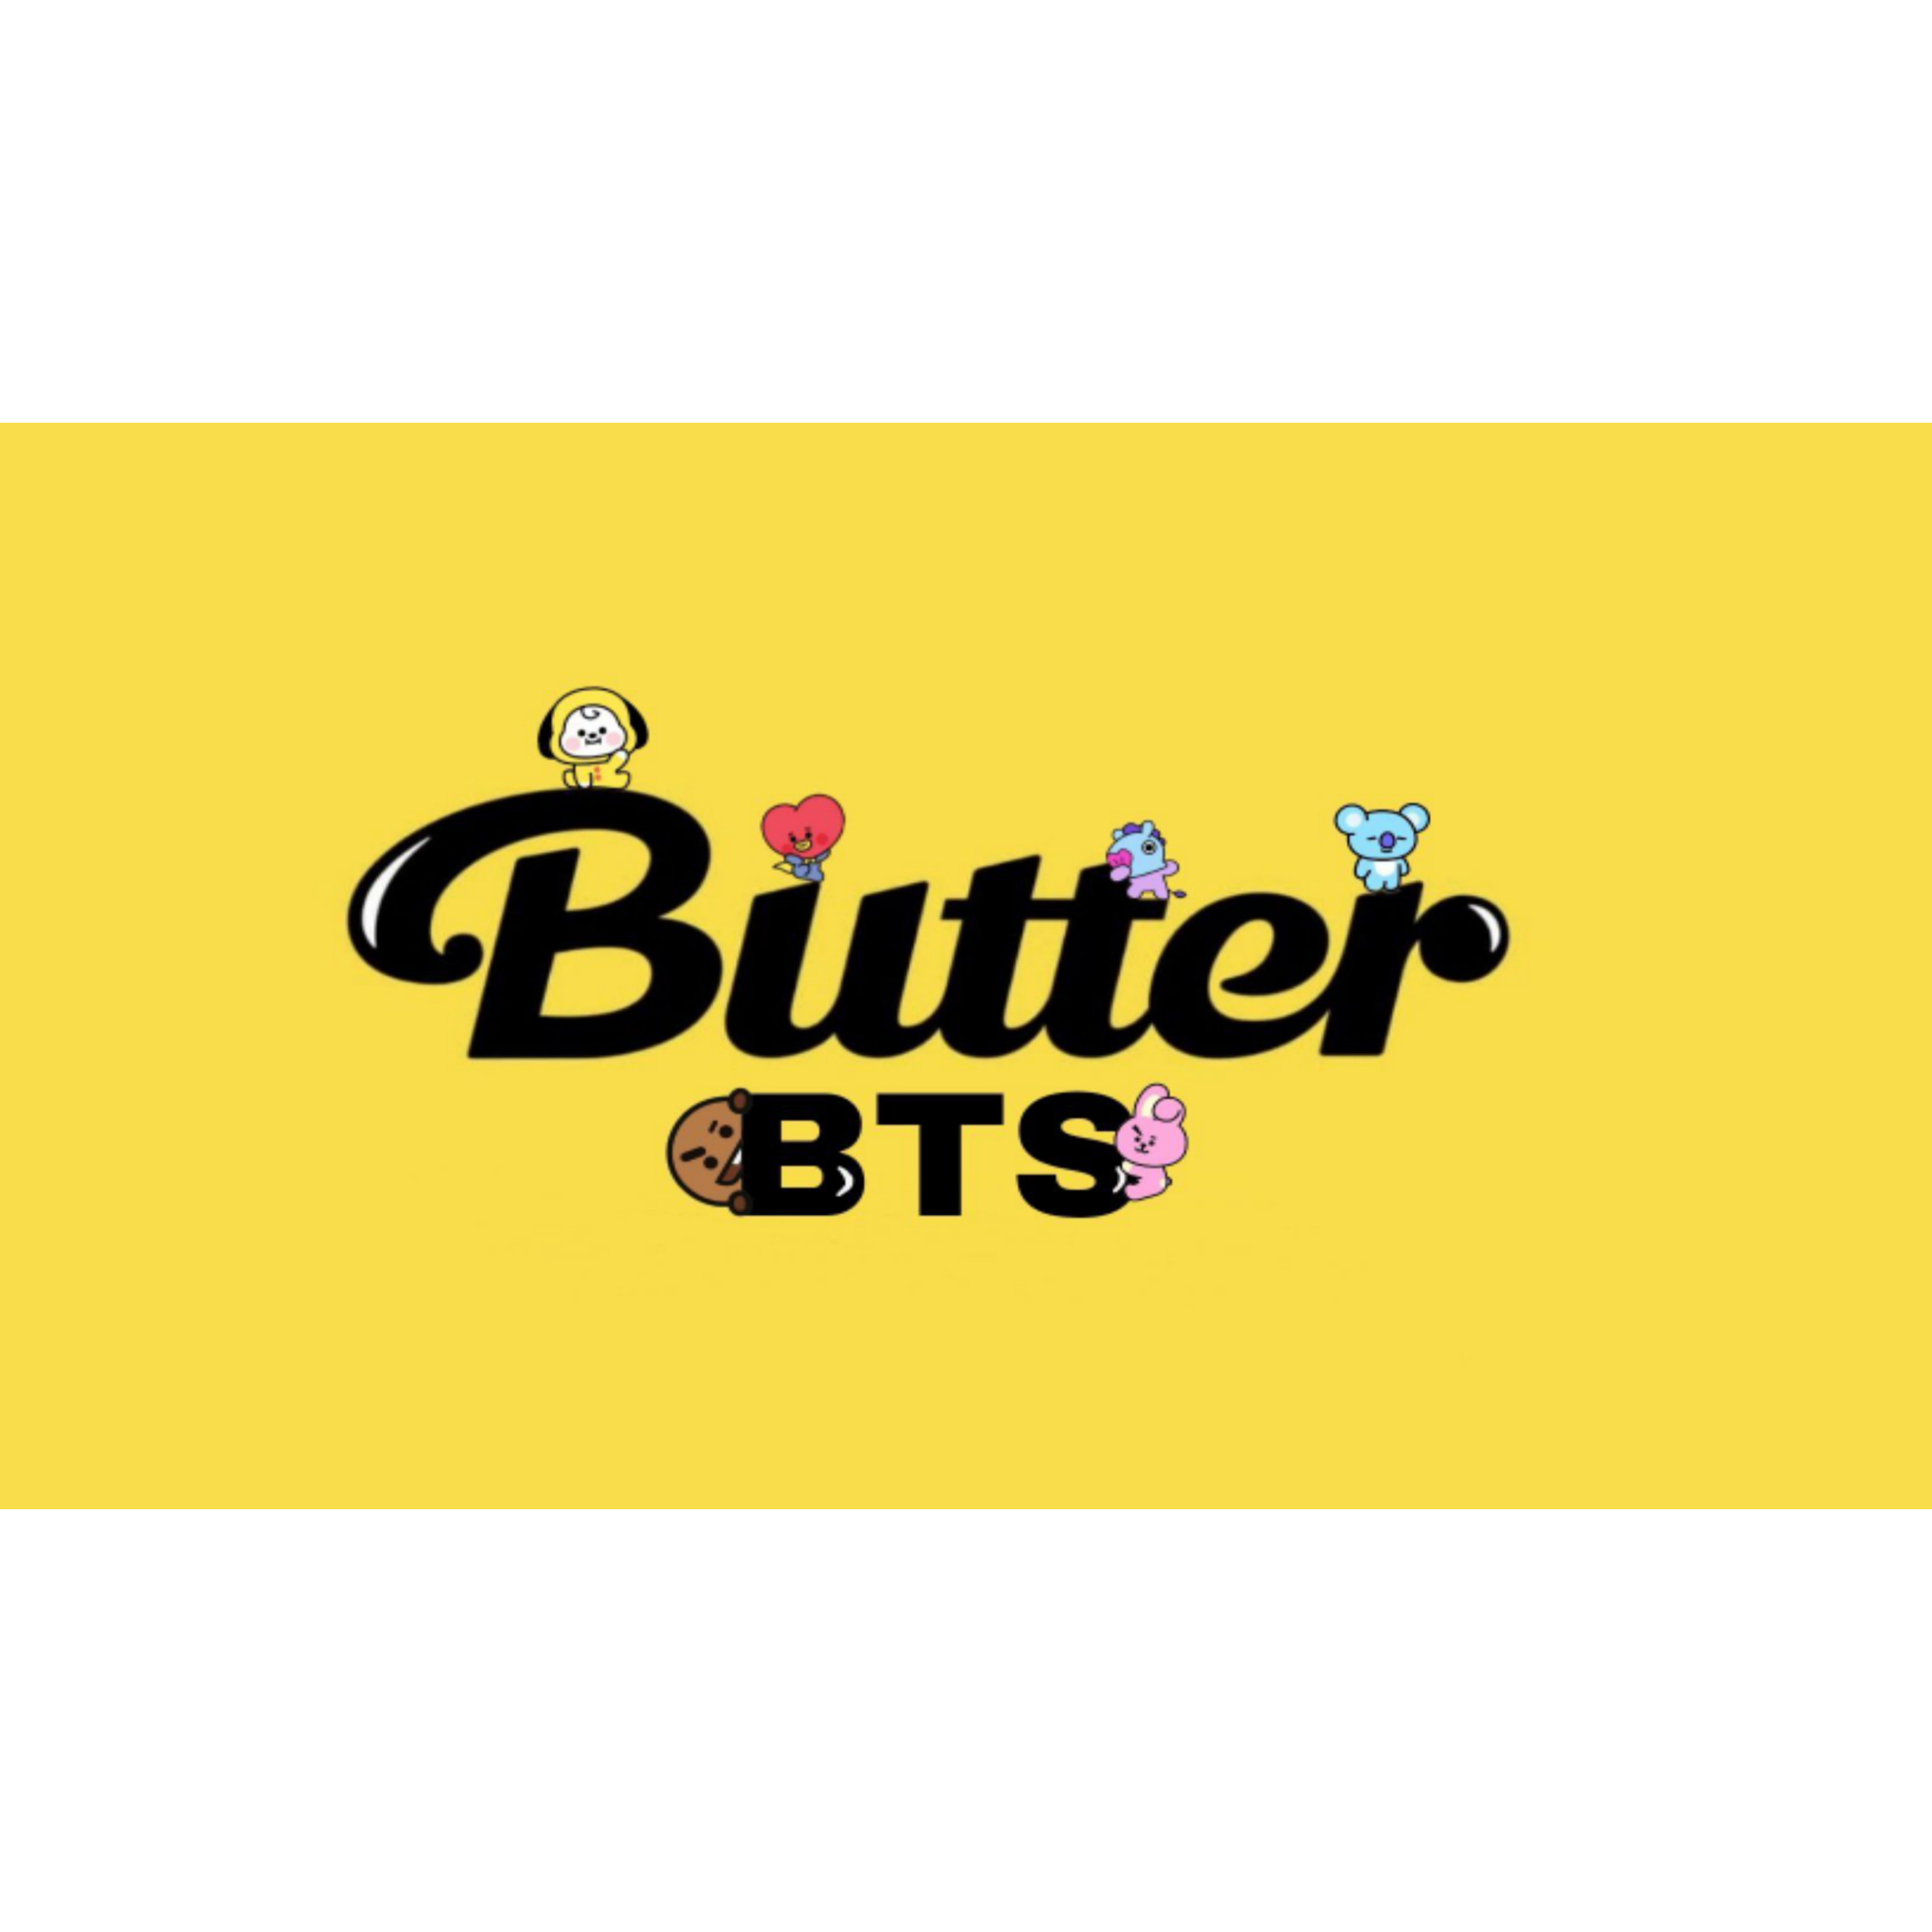 butter butterbts bts didi_ban_ban sticker by @didi_bam_bam